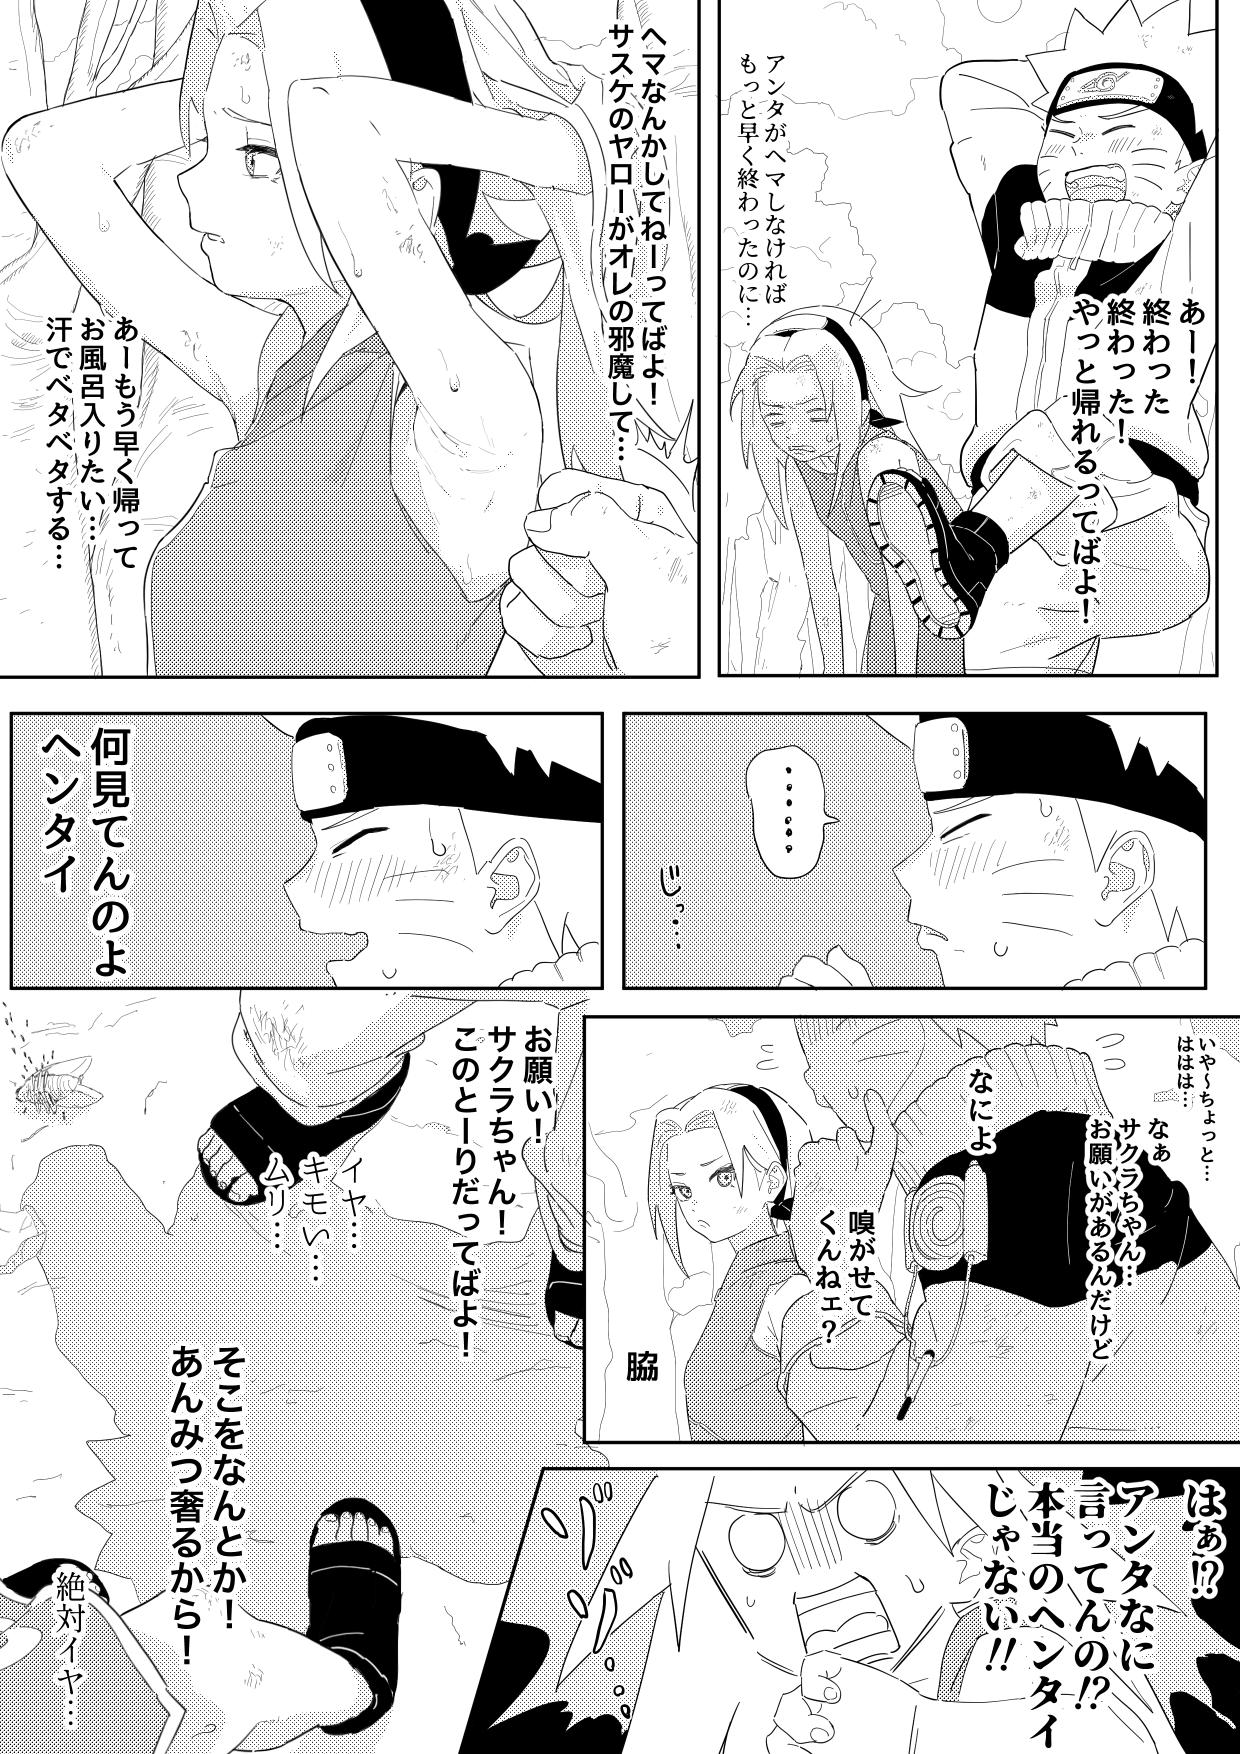 ナルサク漫画 [5ナン] (NARUTO -ナルト-) 0